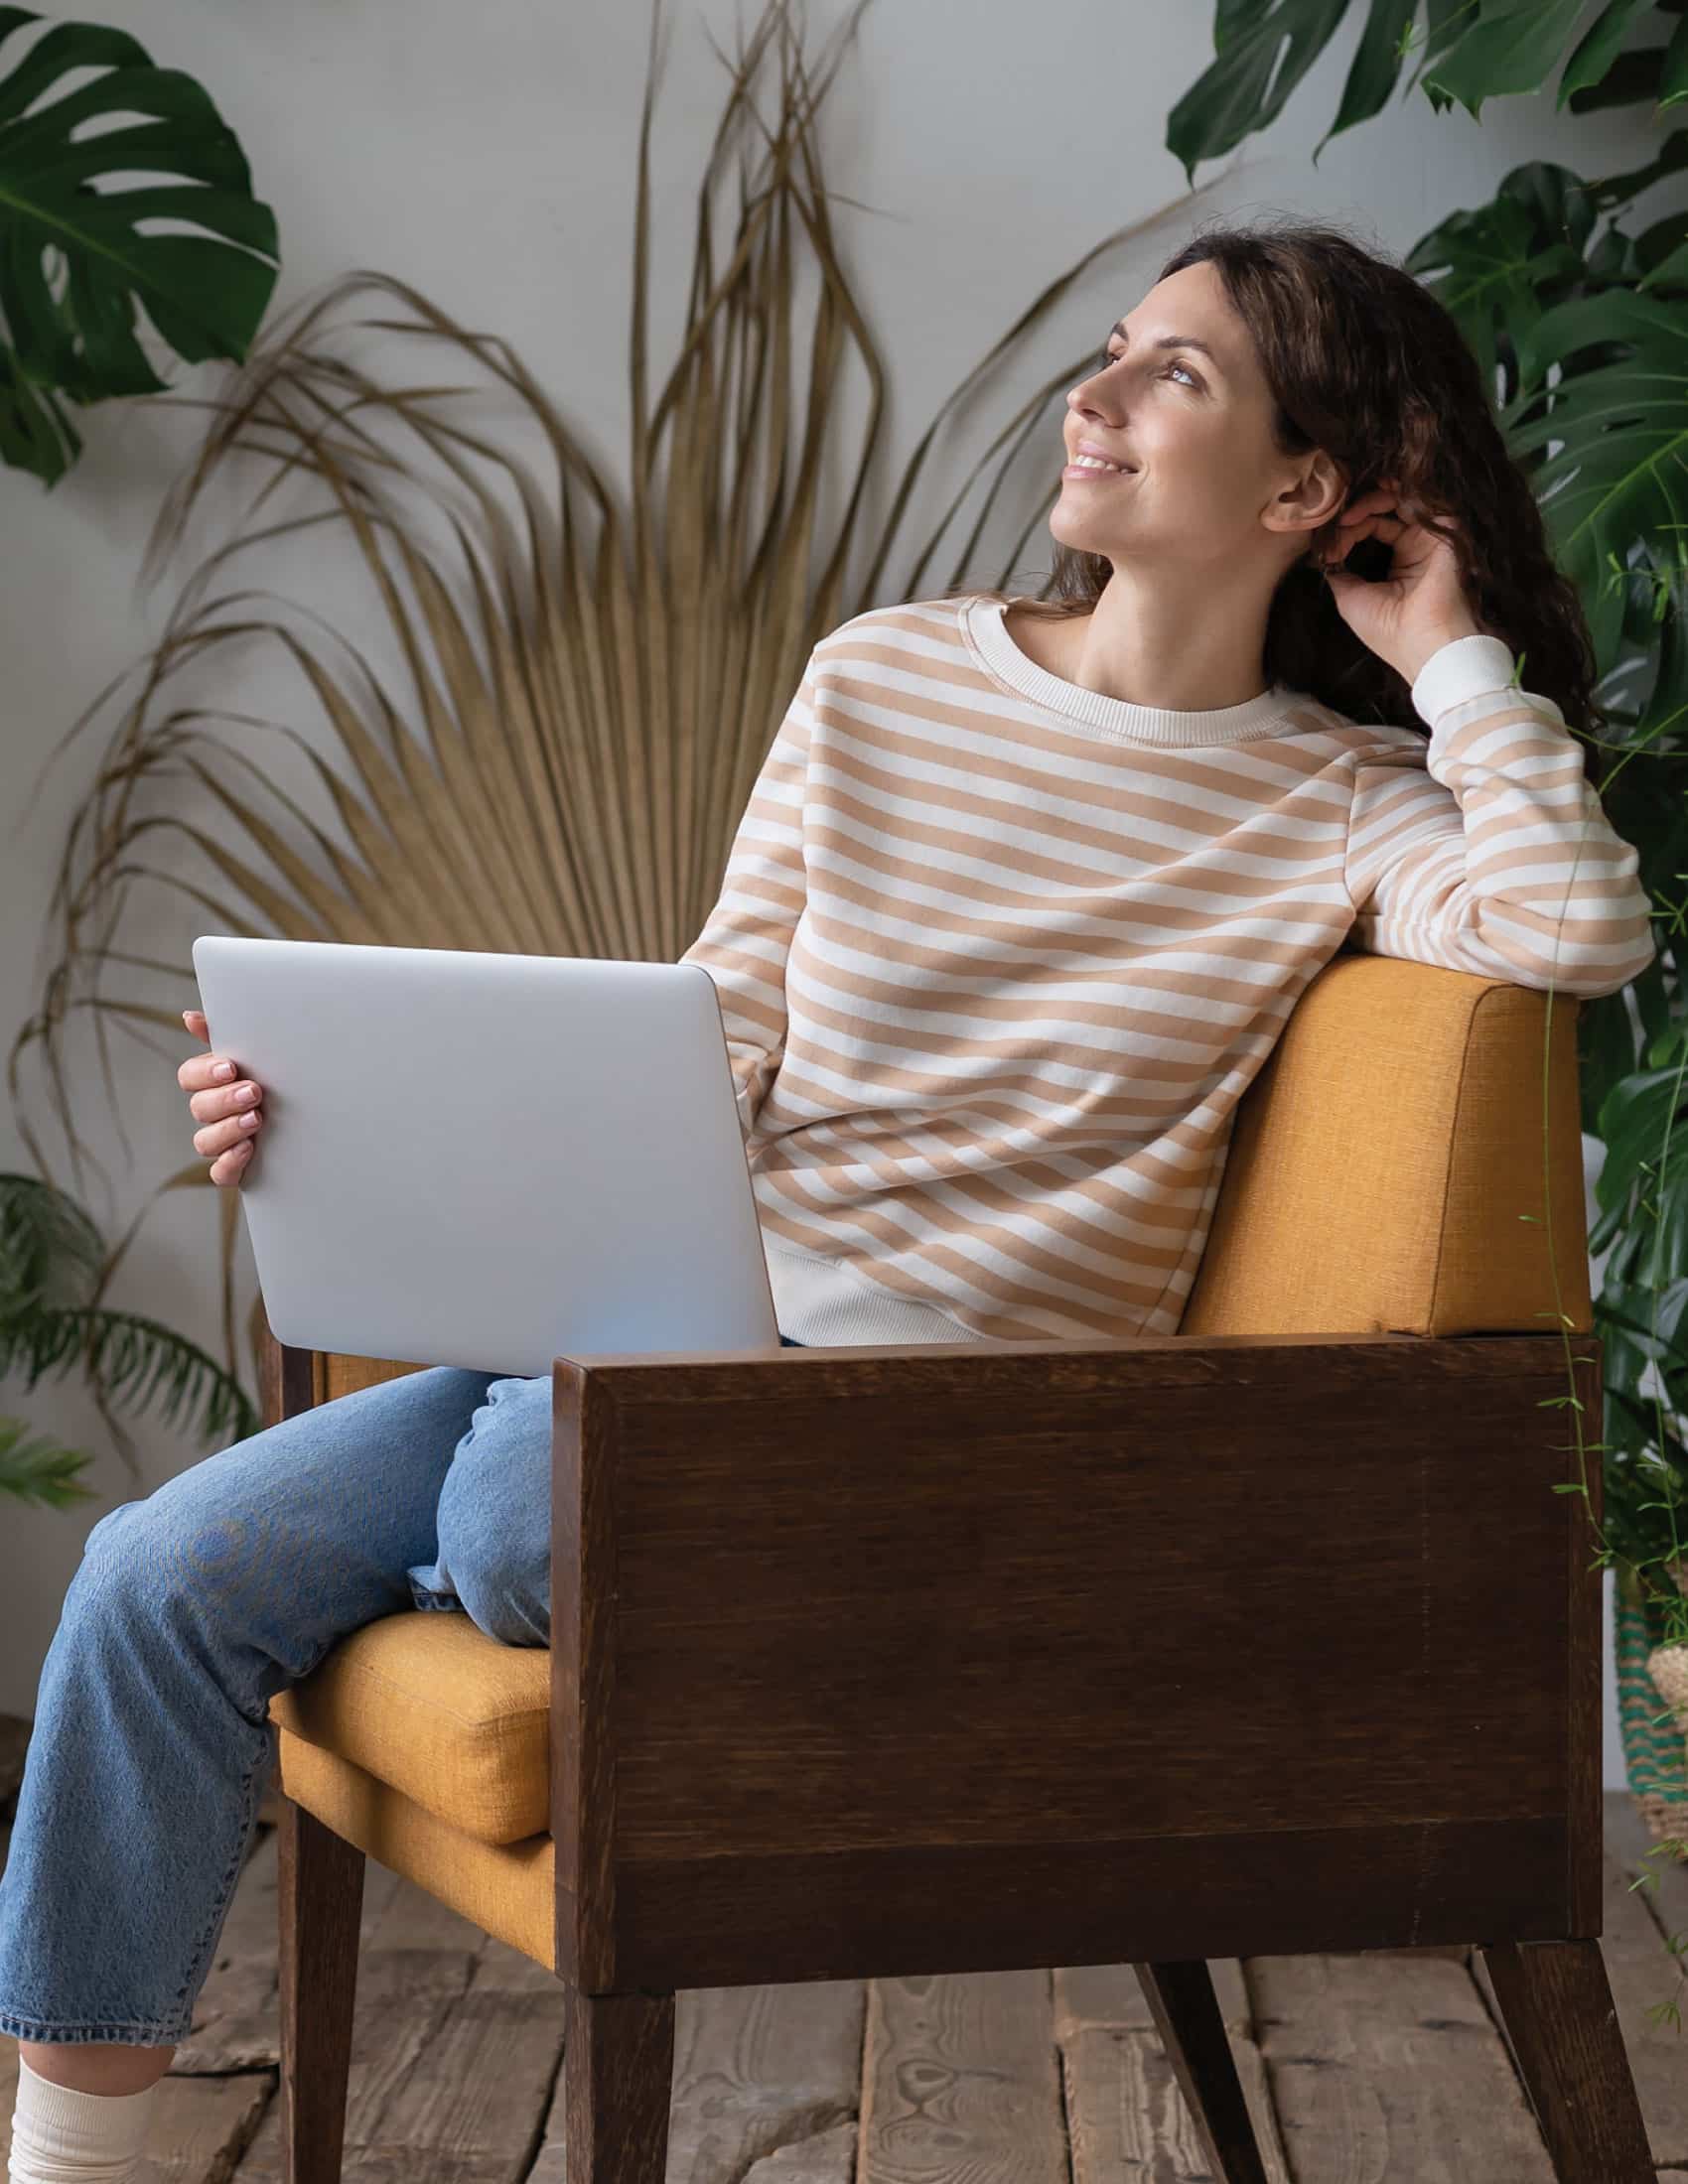 Femme souriante en jeans assise dans un fauteuil moutarde tenant un ordinateur portable, entourée de plantes d'intérieur.